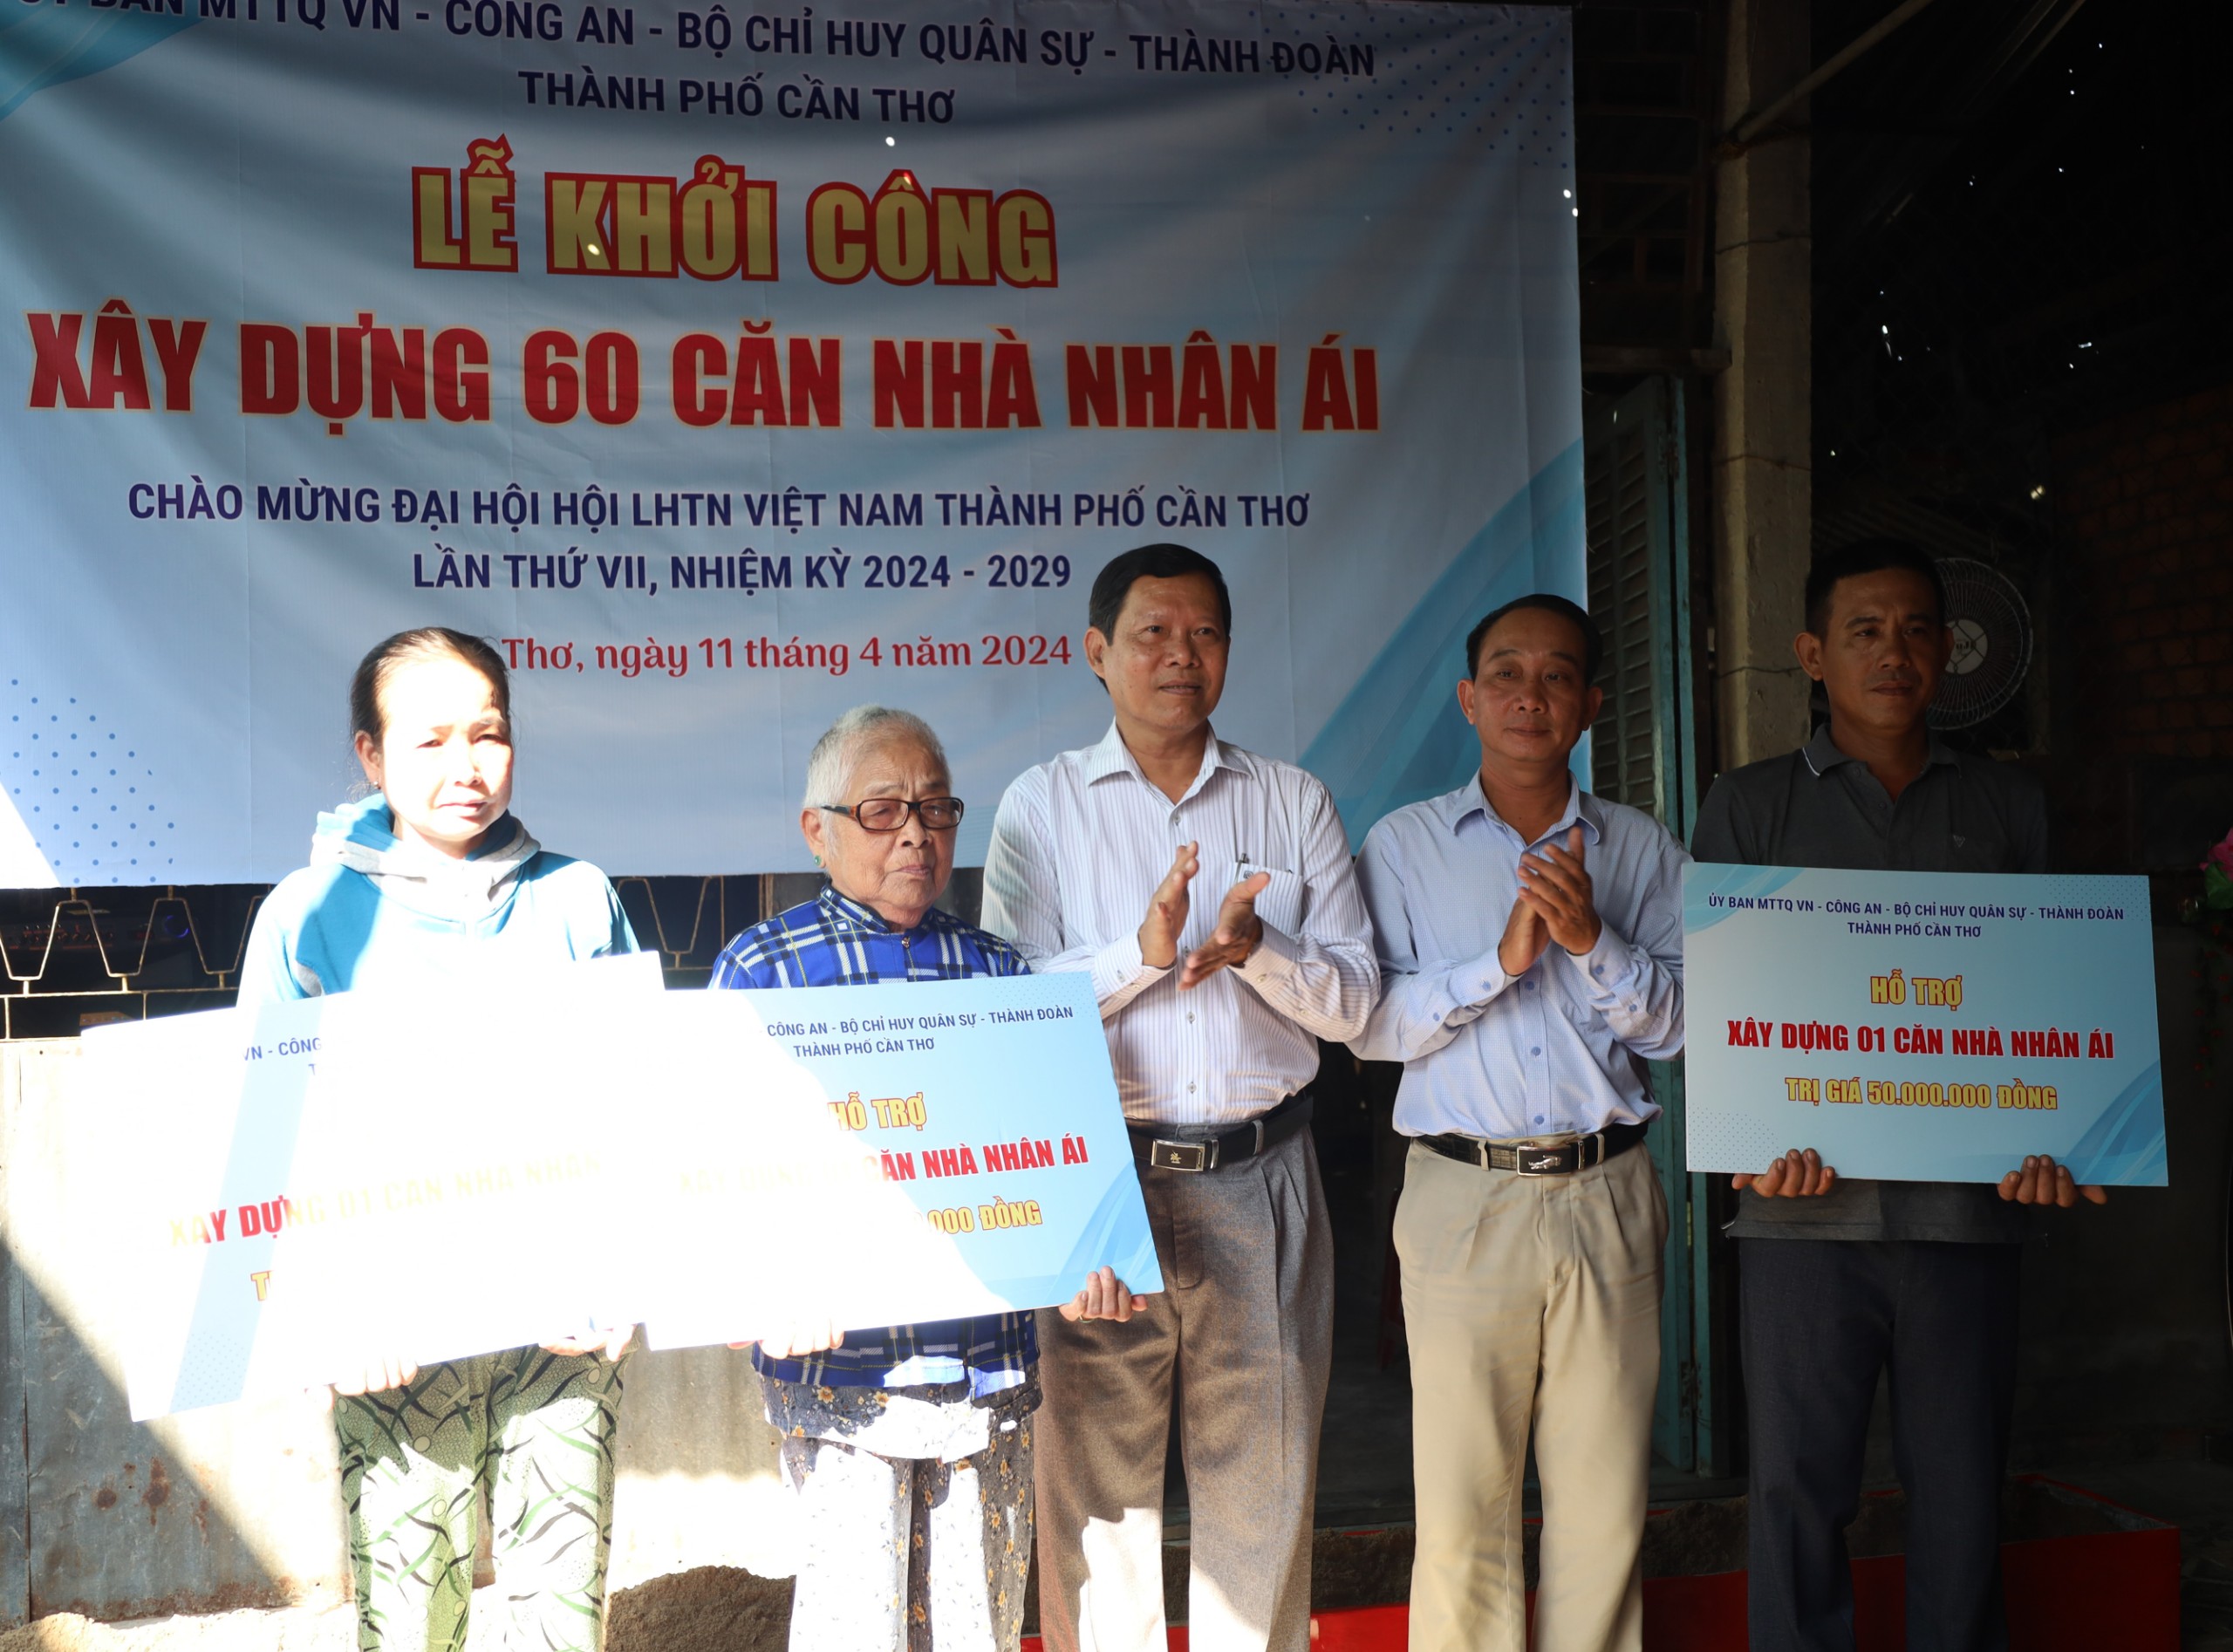 Ông Nguyễn Hoàng Ba - Bí thư Quận ủy, Chủ tịch HÐND quận Ô Môn trao tặng bảng tượng trưng Nhà Nhân ái cho các hộ dân trên địa bàn quận Ô Môn.